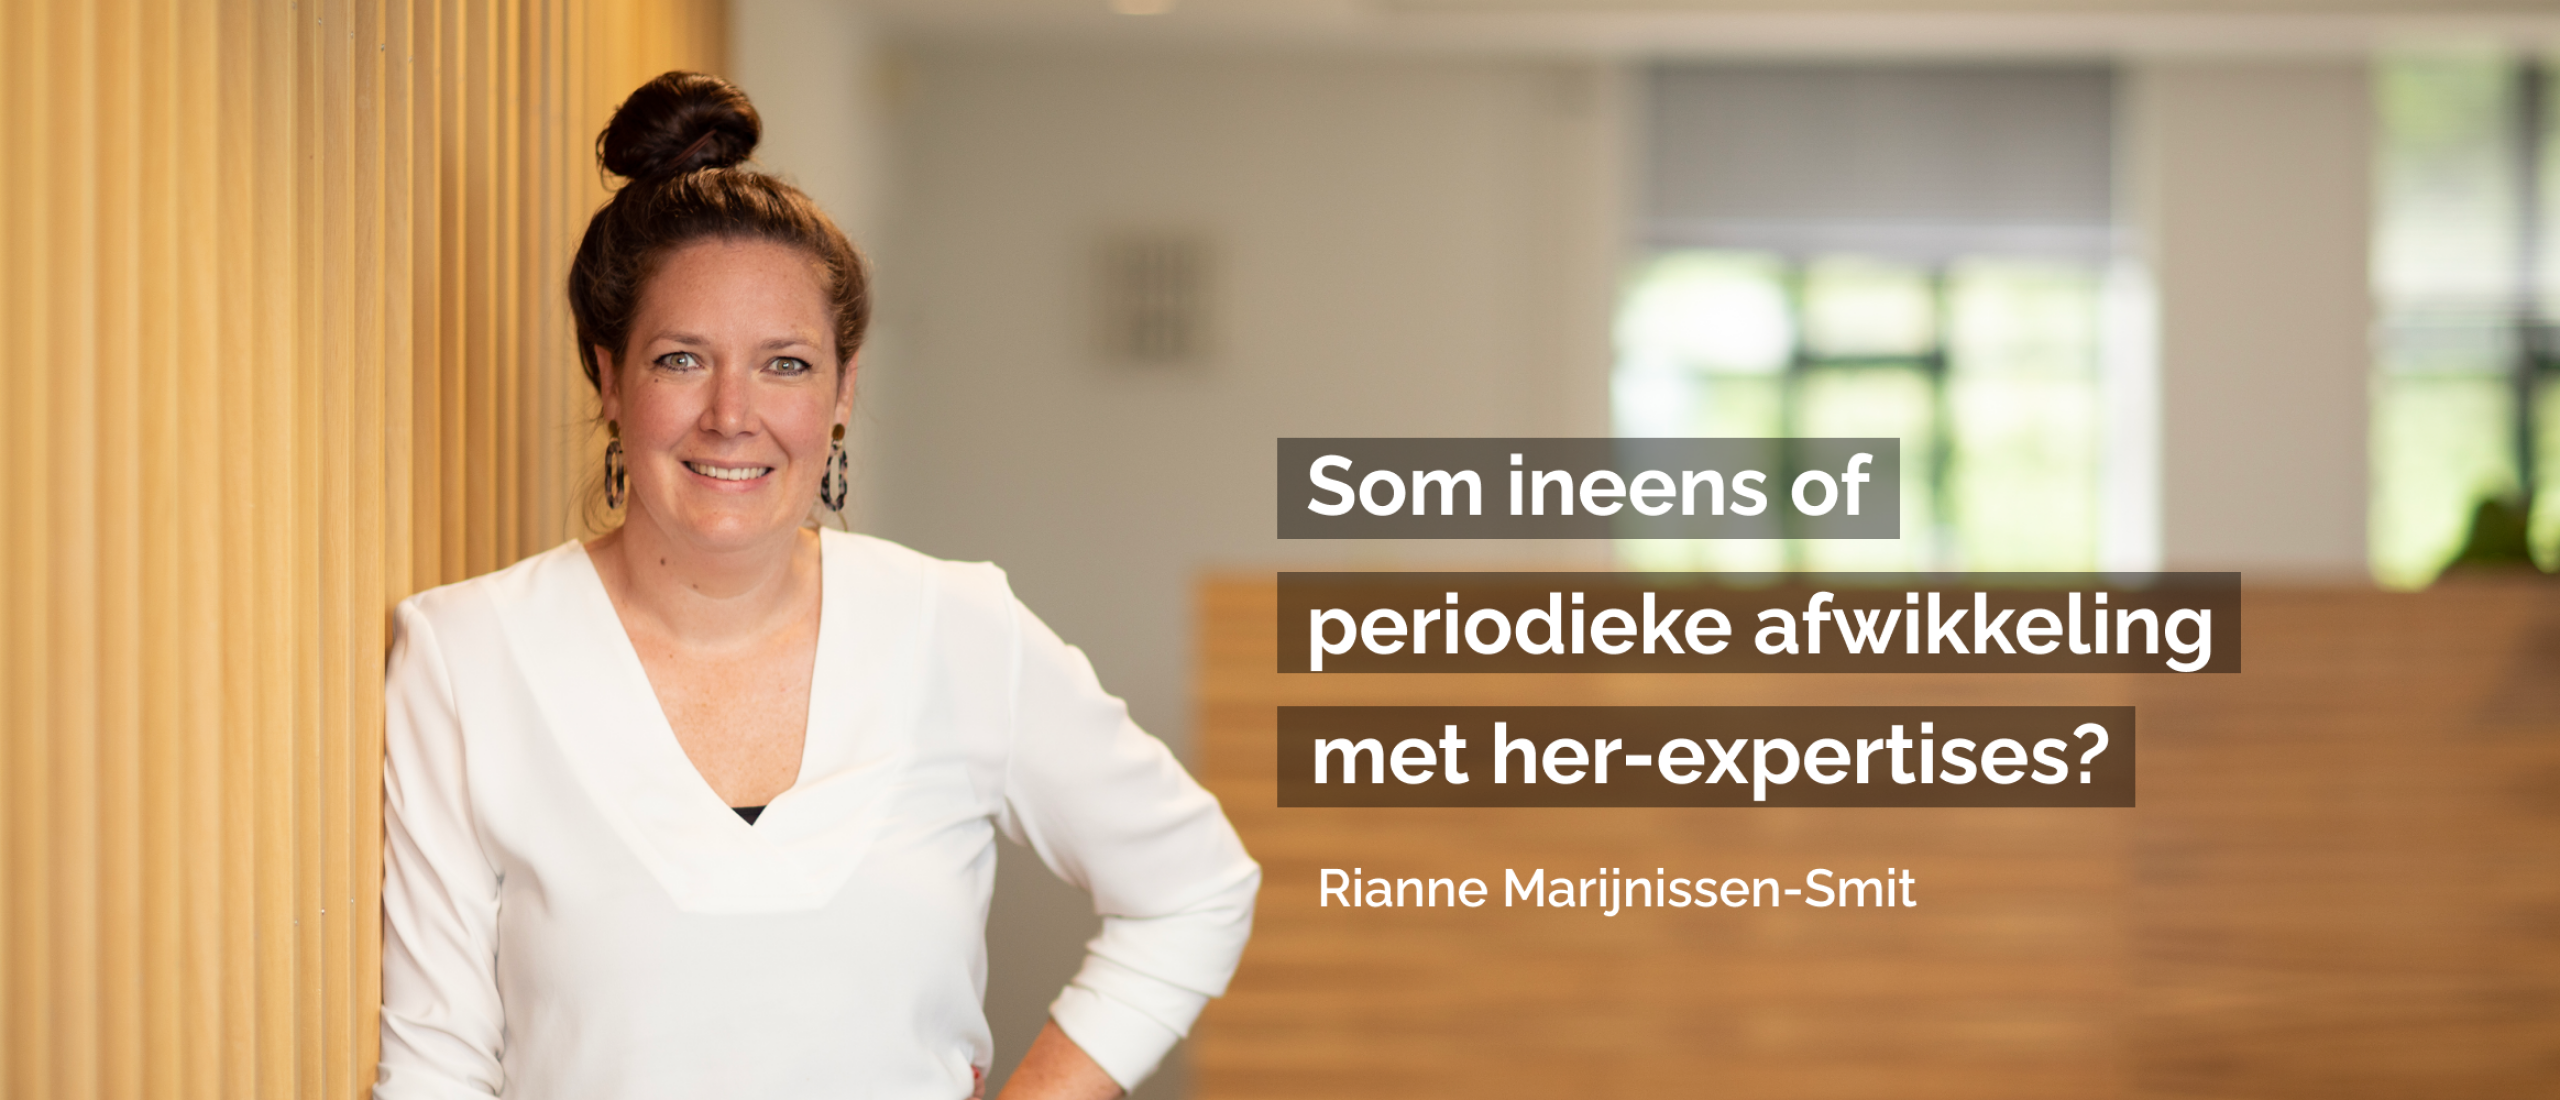 Blog Rianne Marijnissen-Smit | Som ineens of periodieke afwikkeling met her-expertises?